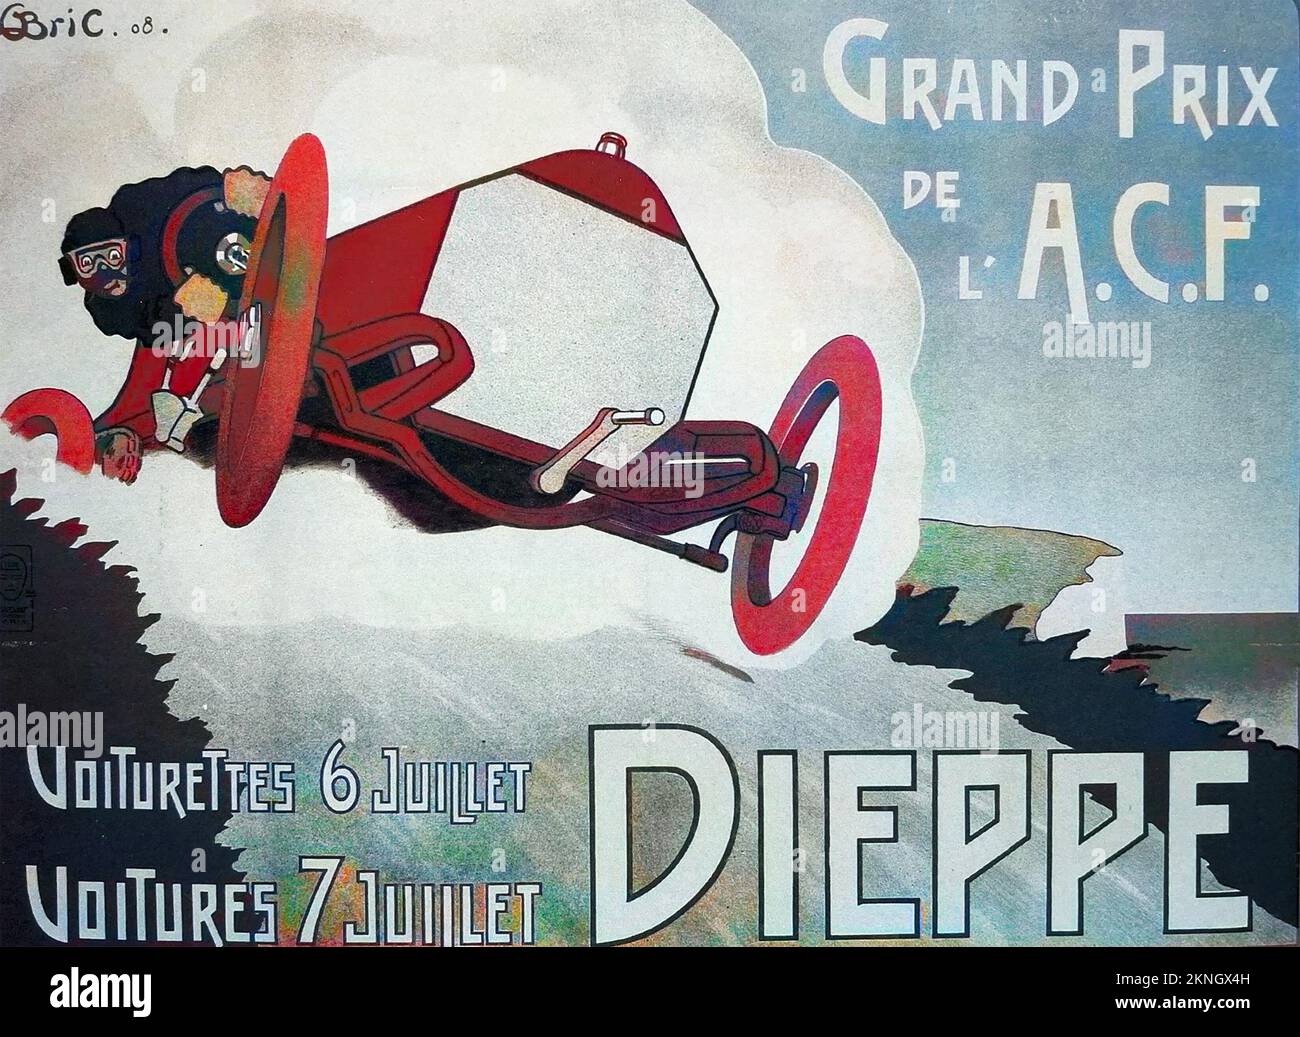 GRAND PRIX de DIEPPE 1908 malgré l'humour dans cette image dans la course réelle, un pilote et son mécanicien sont morts quand leur voiture a renversé - les premières morts dans l'histoire du Grand Prix. Banque D'Images